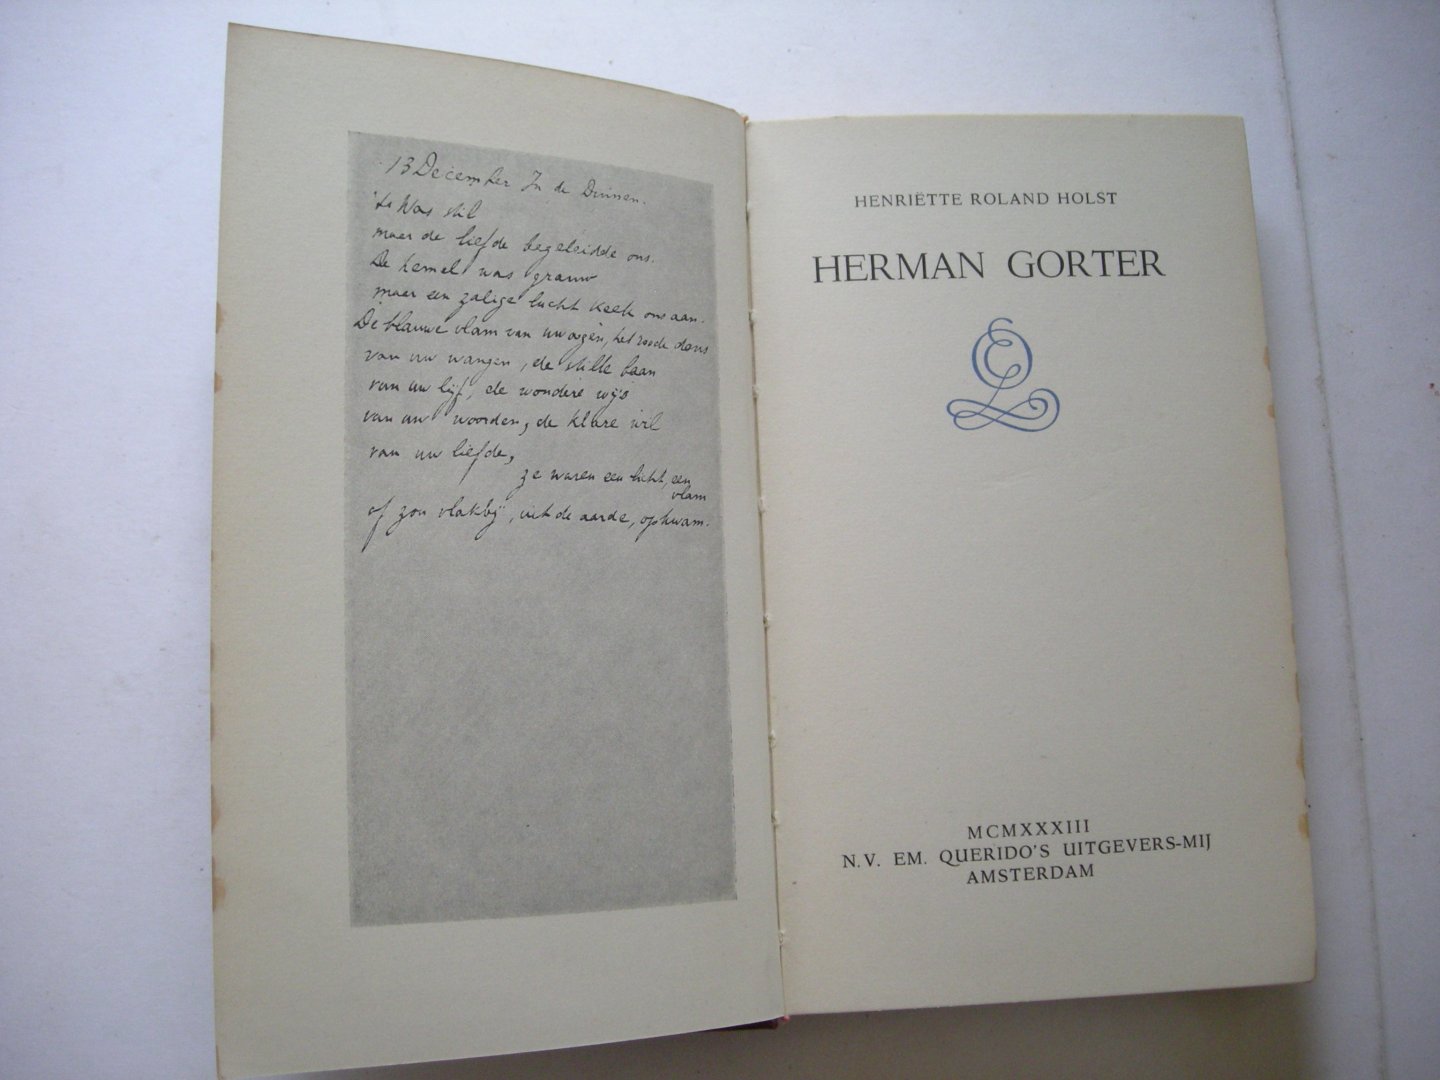 Roland Holst, Henriette - Herman Gorter. Biografische aanteekeningen, De schoonheid van Herman Gorter's poezie